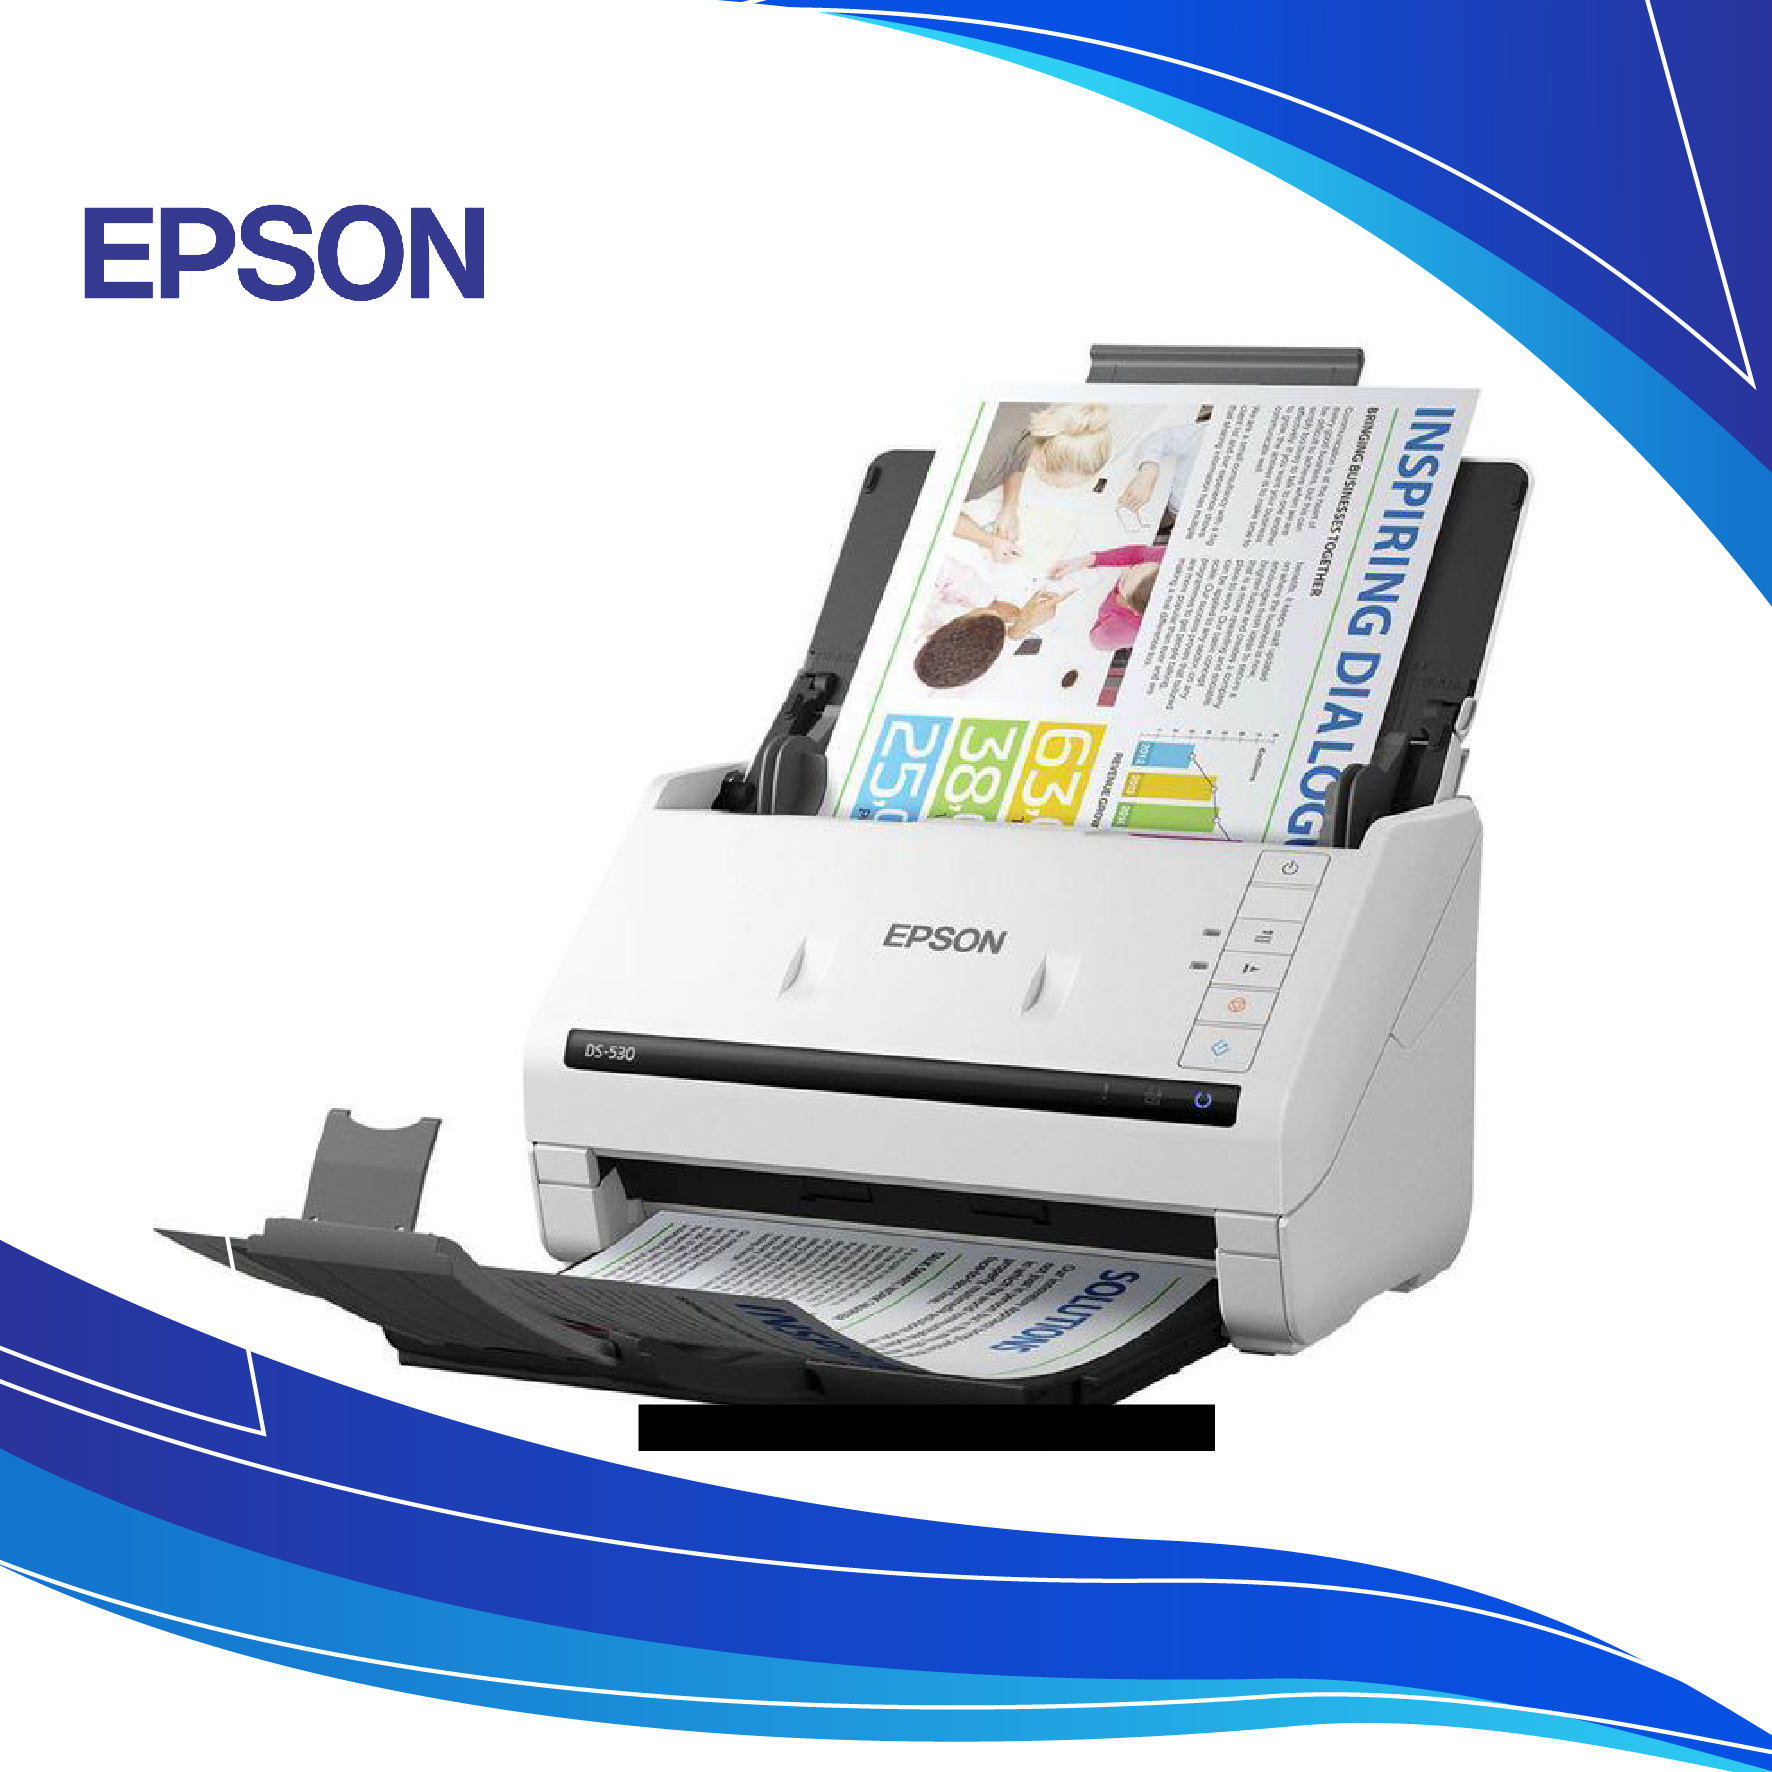 Escáner Epson Workforce DS-530 | epson escaner de documentos | impresoras epson al costo